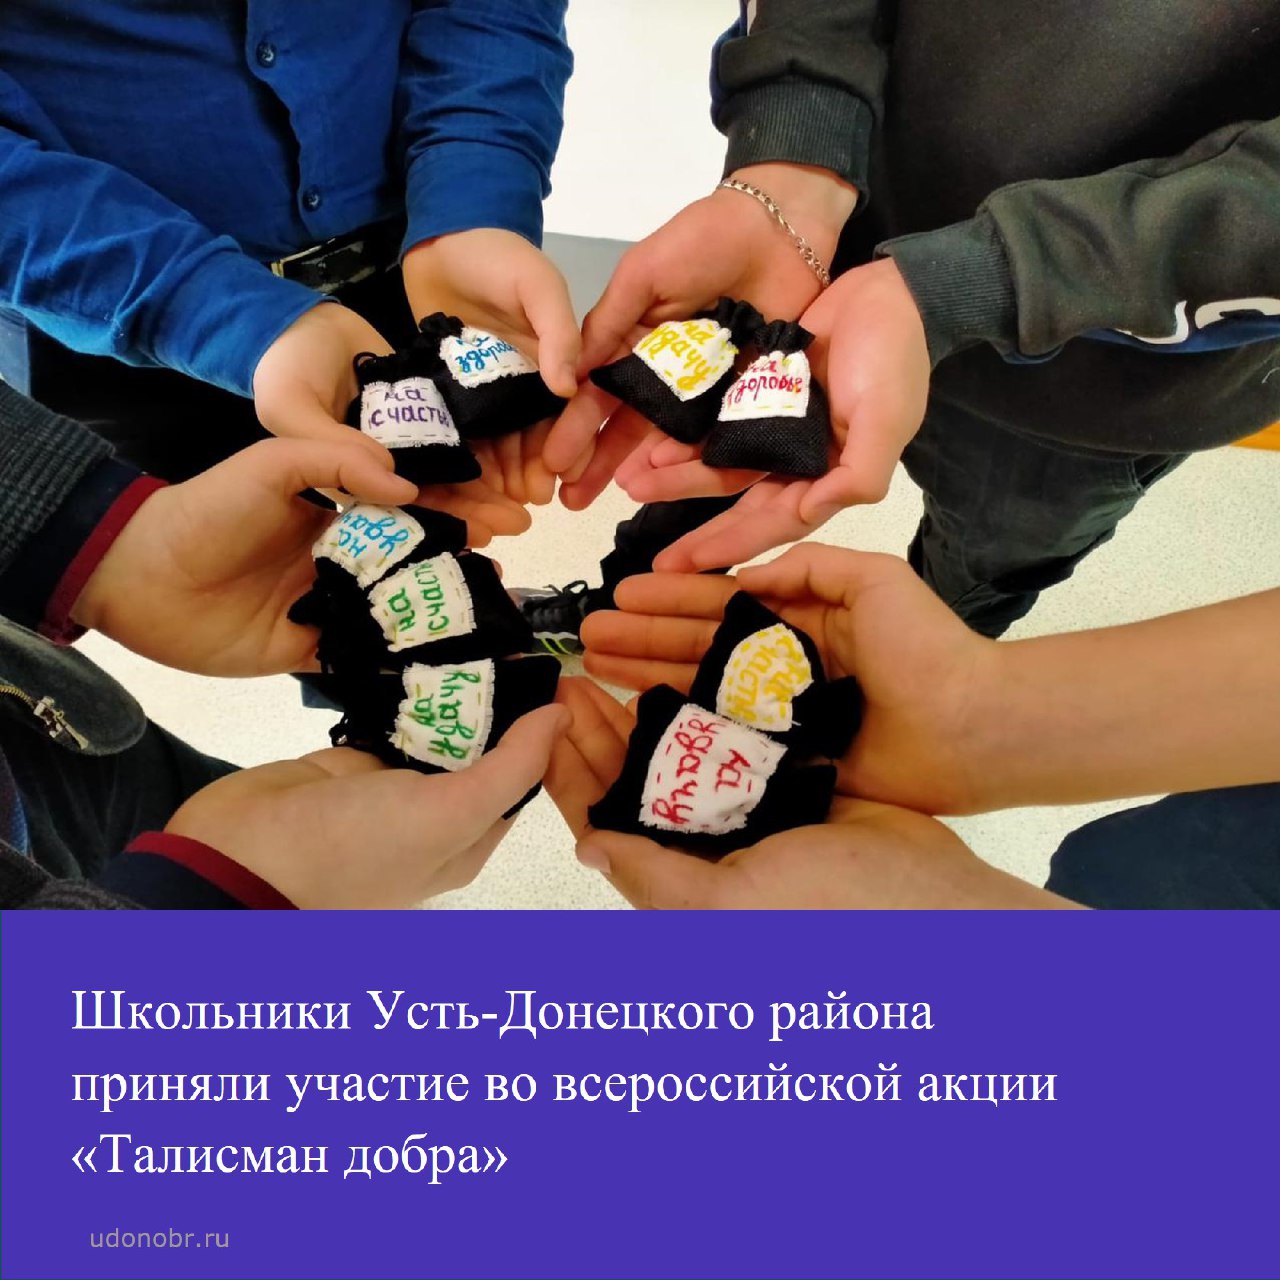 Школьники Усть-Донецкого района приняли участие во всероссийской акции «Талисман добра»